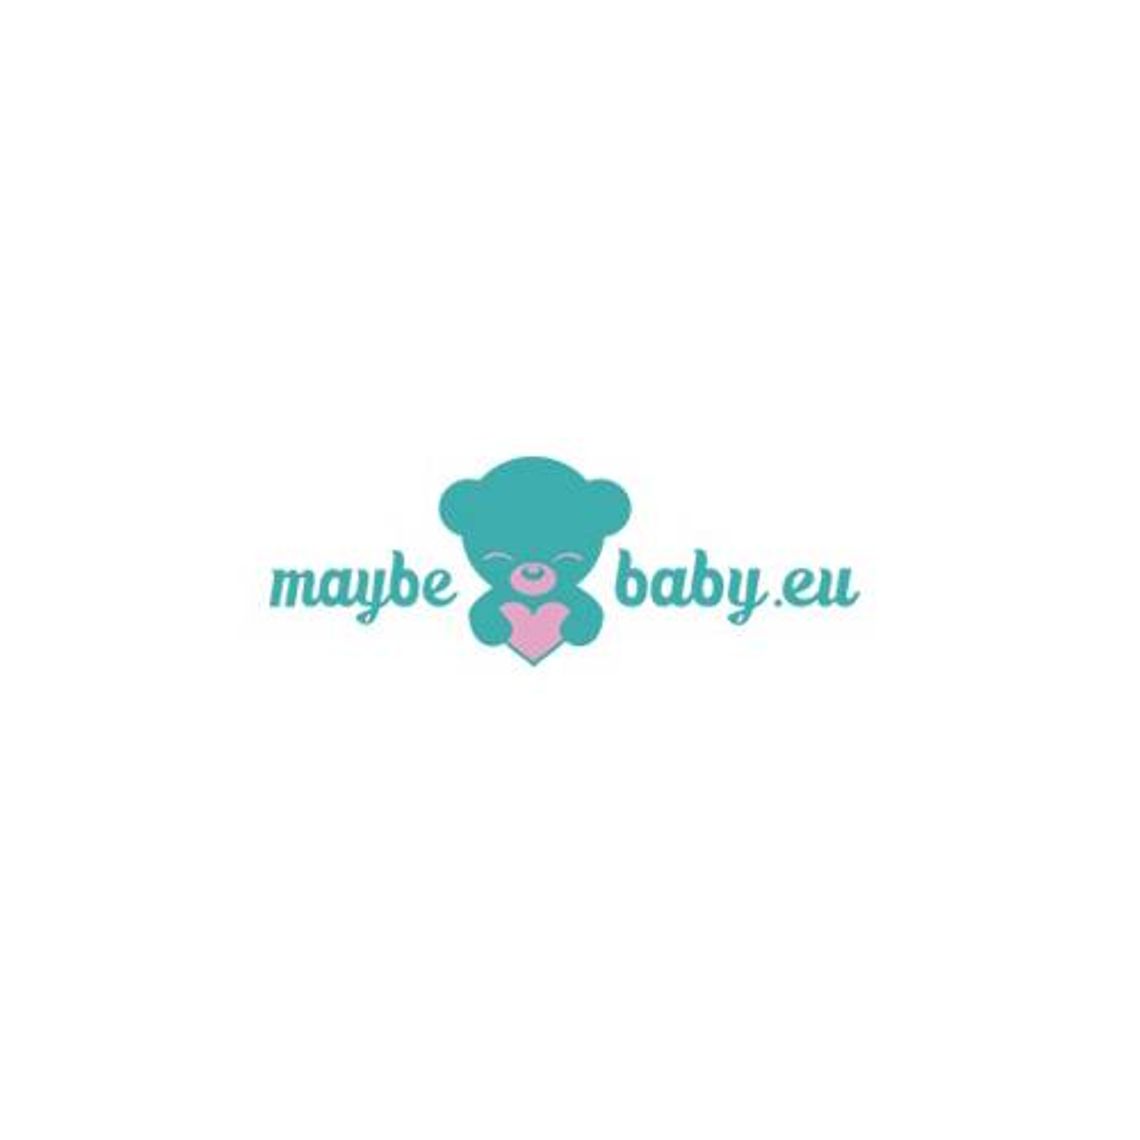 Maybebaby.eu - wysokiej jakości materace